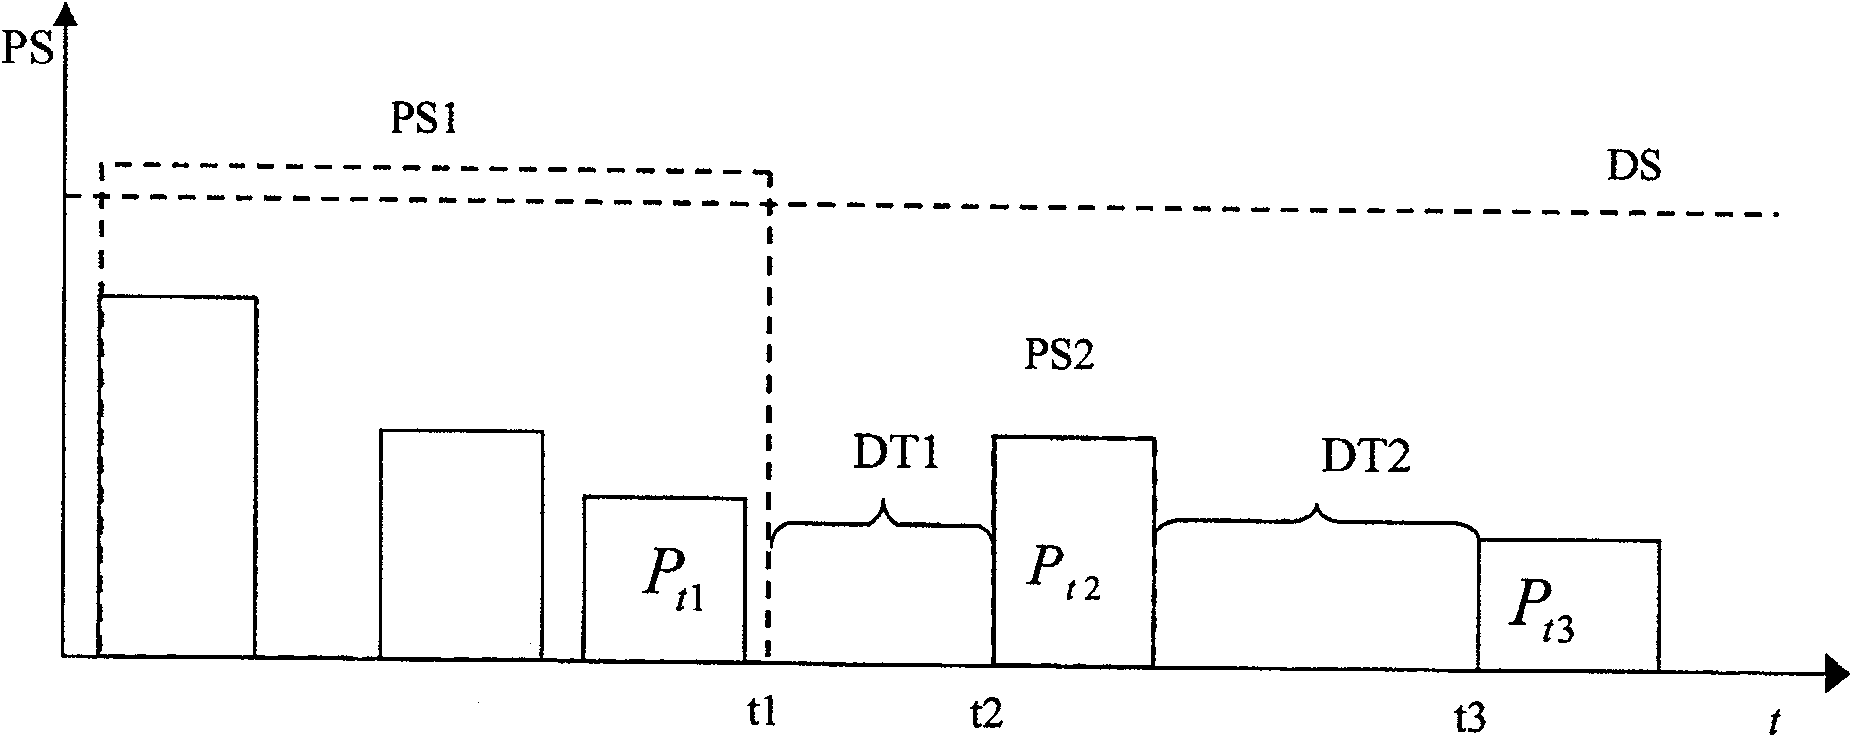 Method for self similar cluster packet of large file service light transmission